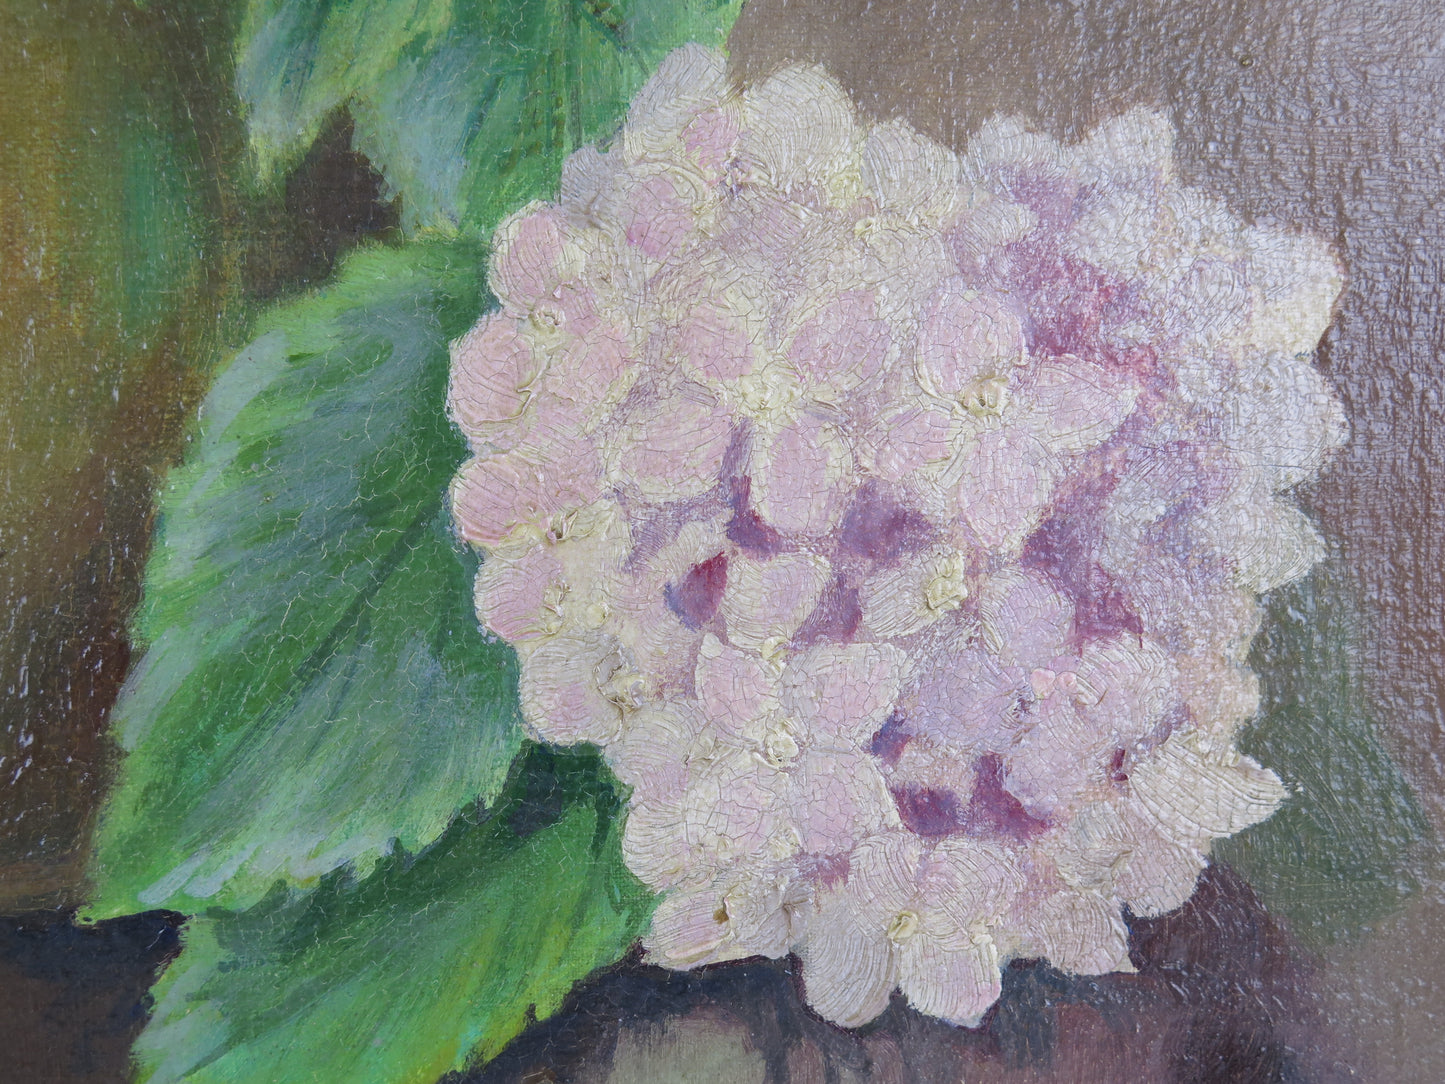 Quadro ad olio firmato Castellini datato 1942 fiori floreale ortensie con cornice coeva dipinto olio x1